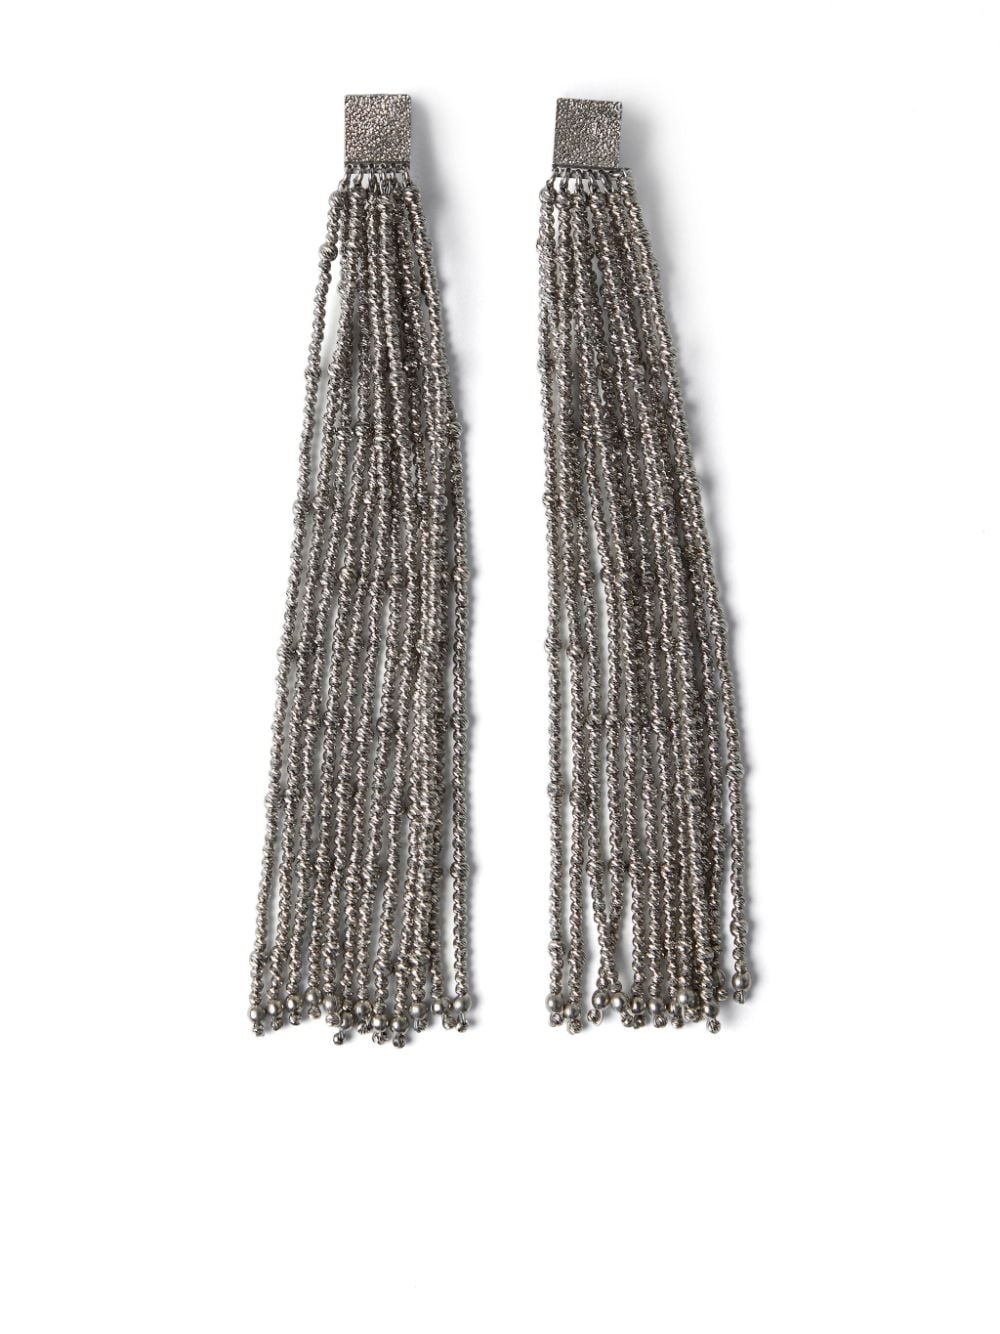 sterling silver drop earrings - 2